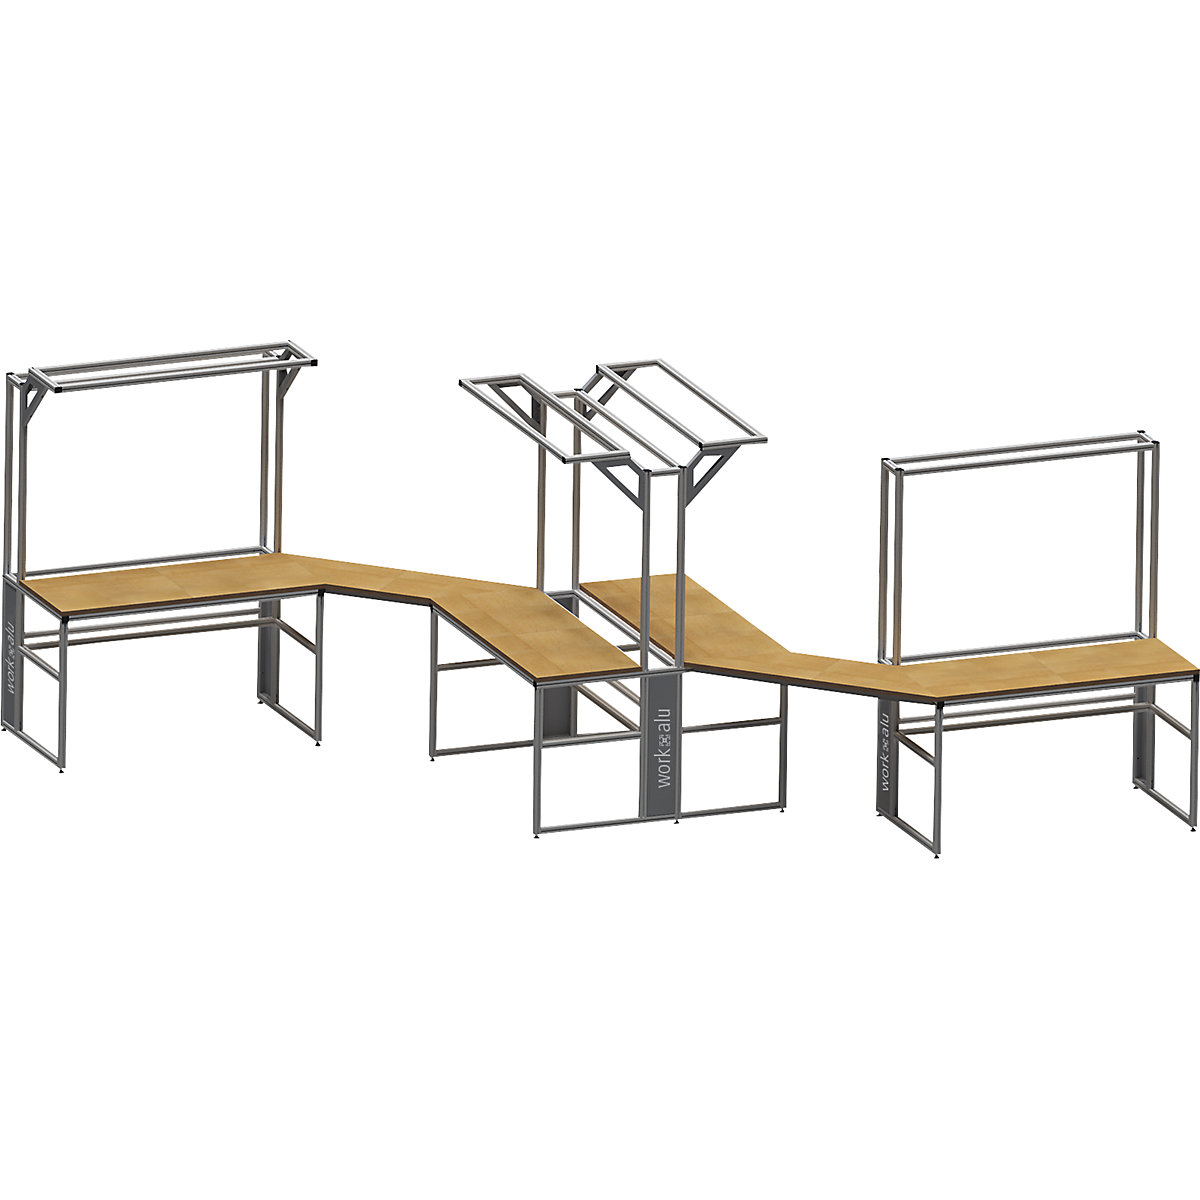 Aluminijasta delovna miza s sistemsko nadgradnjo workalu®, enostranska – bedrunka hirth (Slika izdelka 4)-3